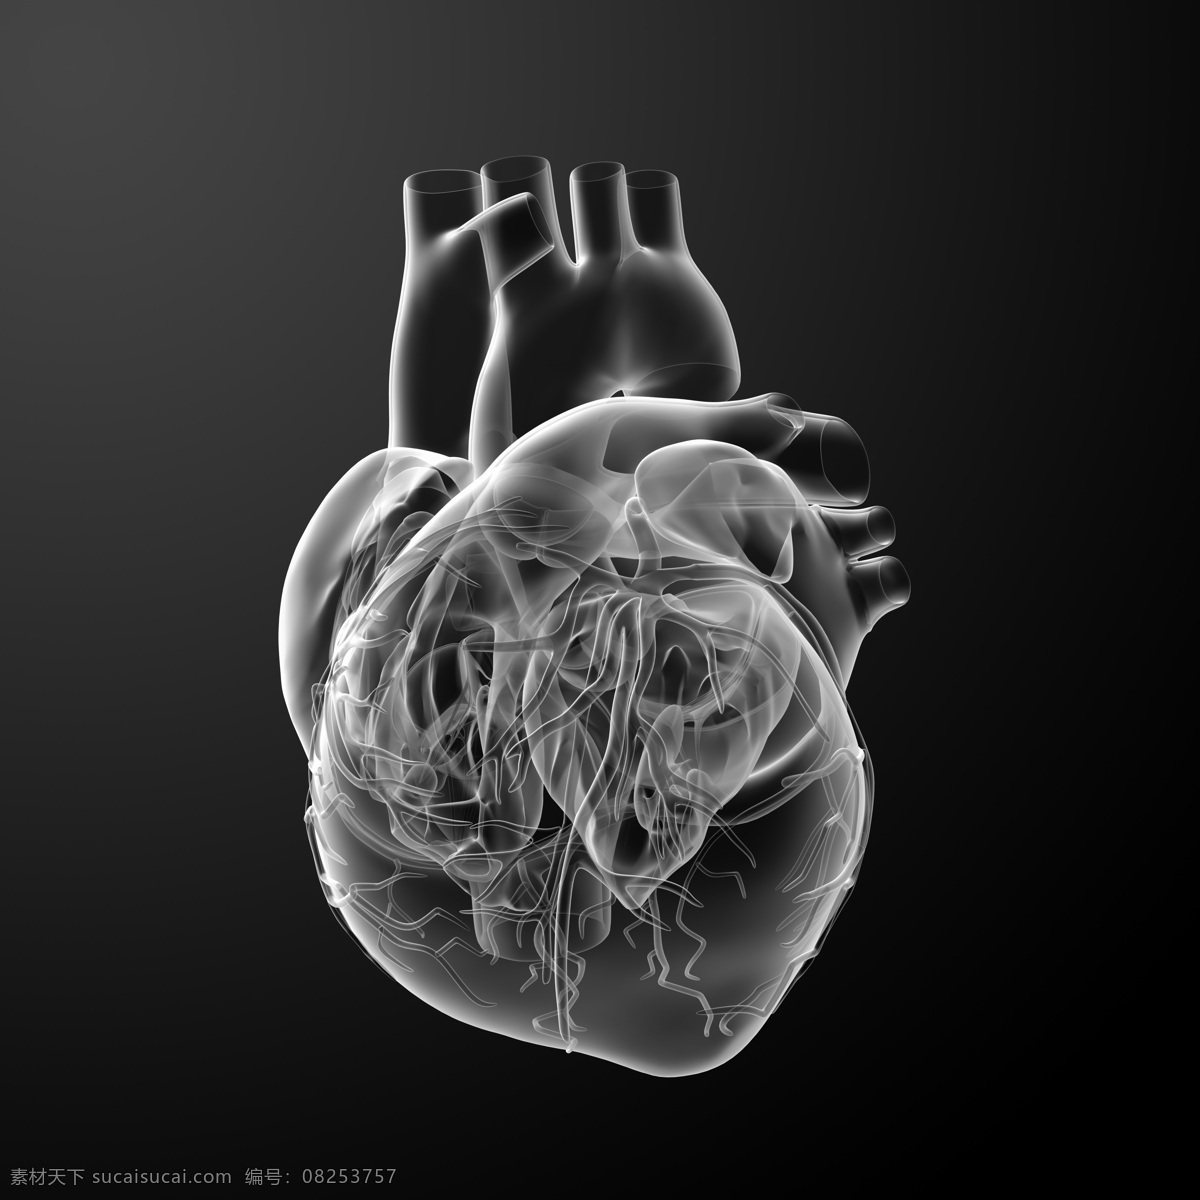 心脏结构 心脏 人体结构 人体骨骼 人体肌肉 人体标本 人体构造 医学 医疗 科学研究 现代科技